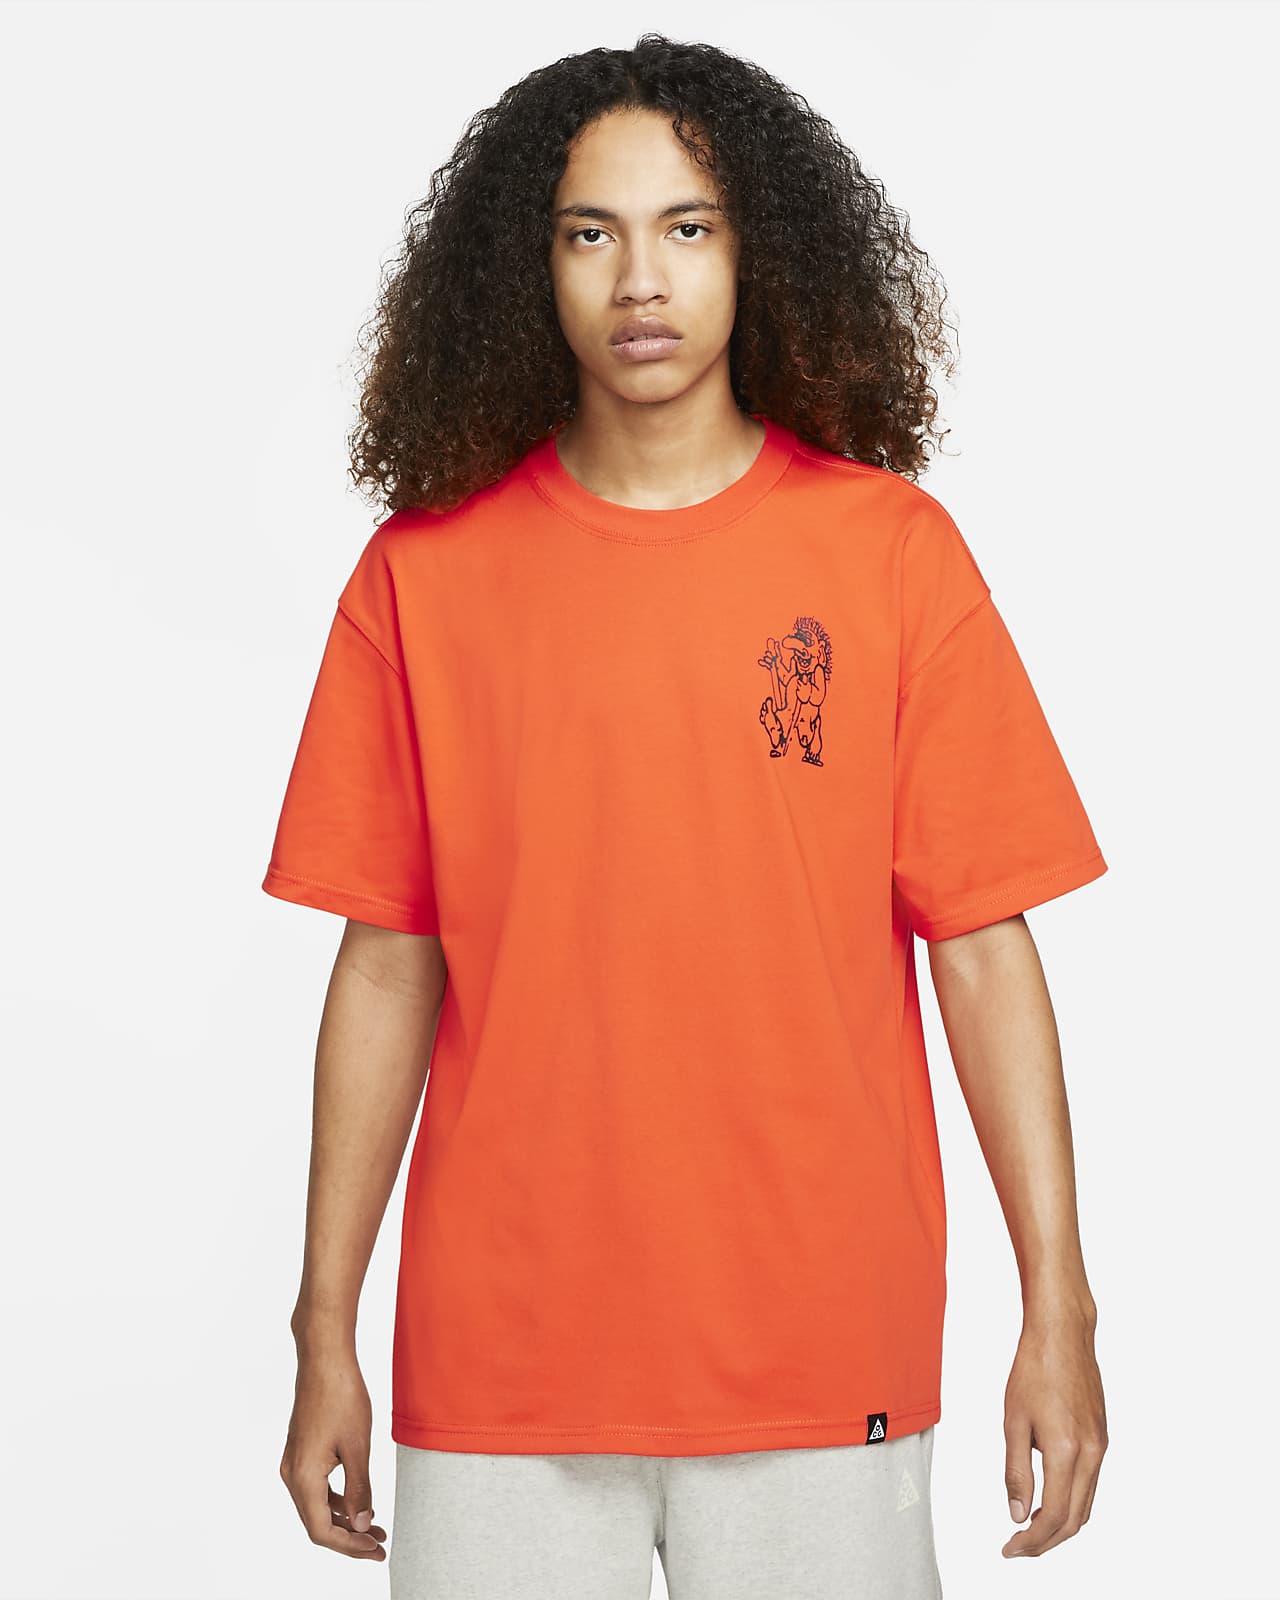 Inspiring Shirt Free Spirit T-shirt Short-Sleeve Unisex T-Shirt